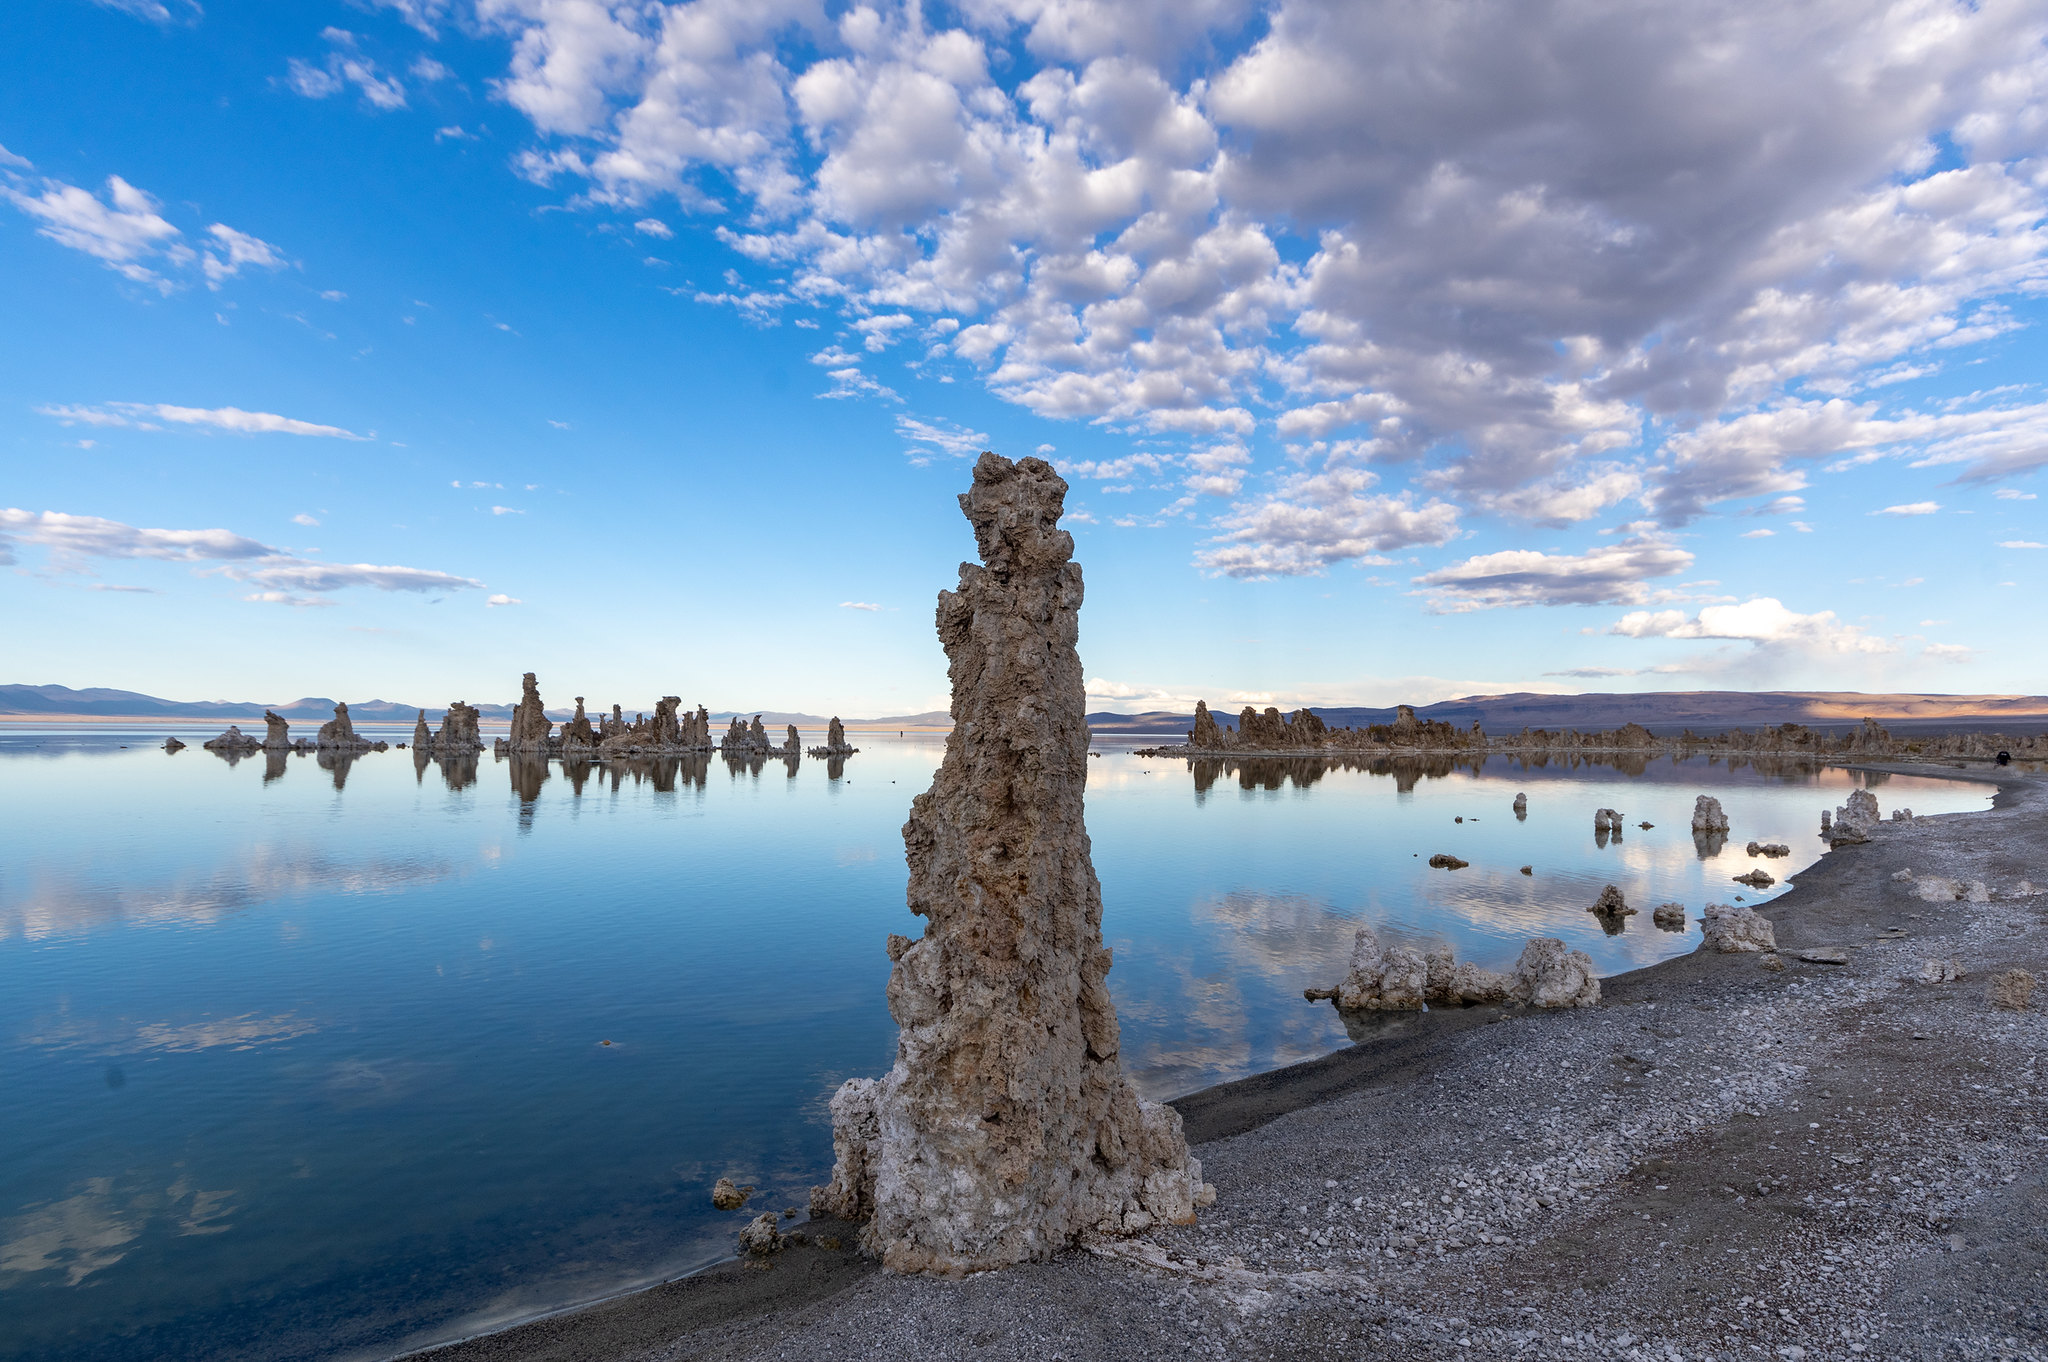 Le Lac Mono en Californie est l'un des nombreux lacs riches en phosphore à la surface de la Terre. © Matthew Dillon, Flickr